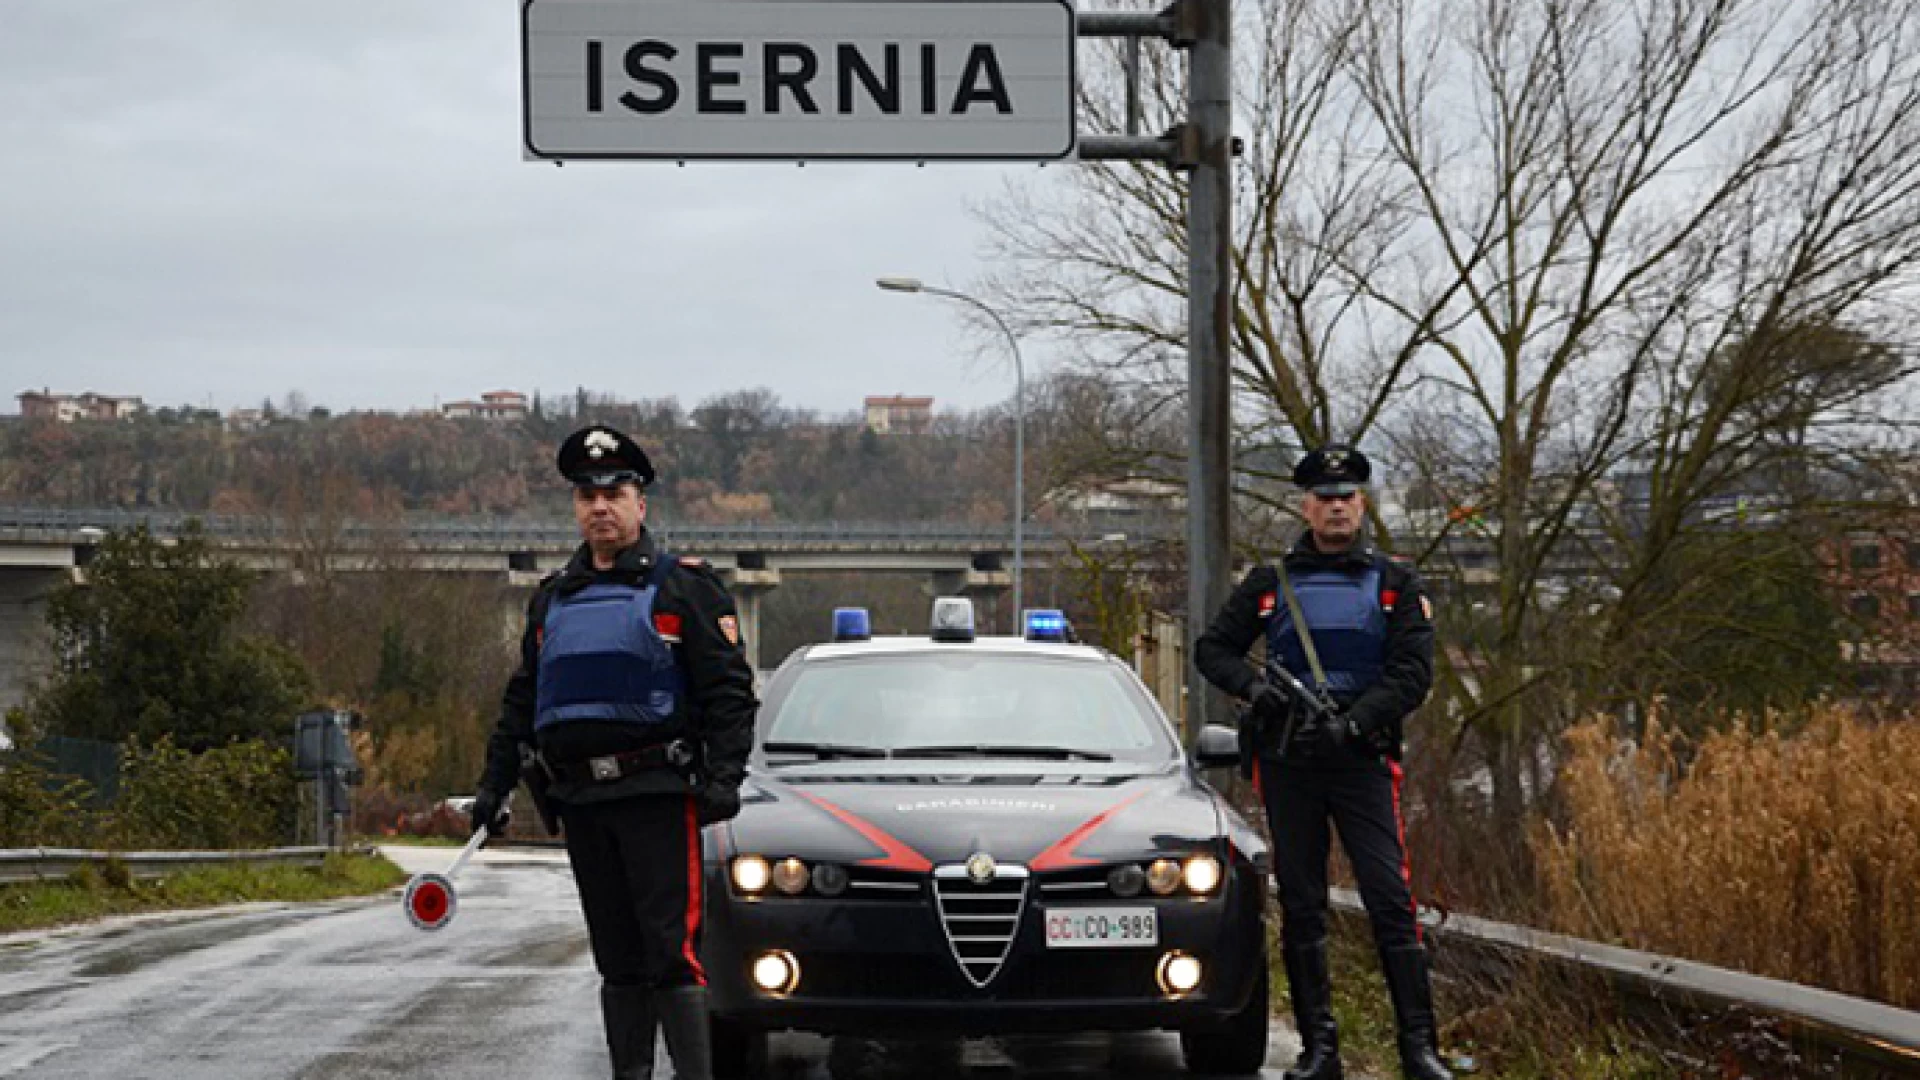 Montaquila: i Carabinieri ritrovano auto rubata nei giorni scorsi. Restituiti anche altri oggetti ad una casalinga e commerciante del posto.